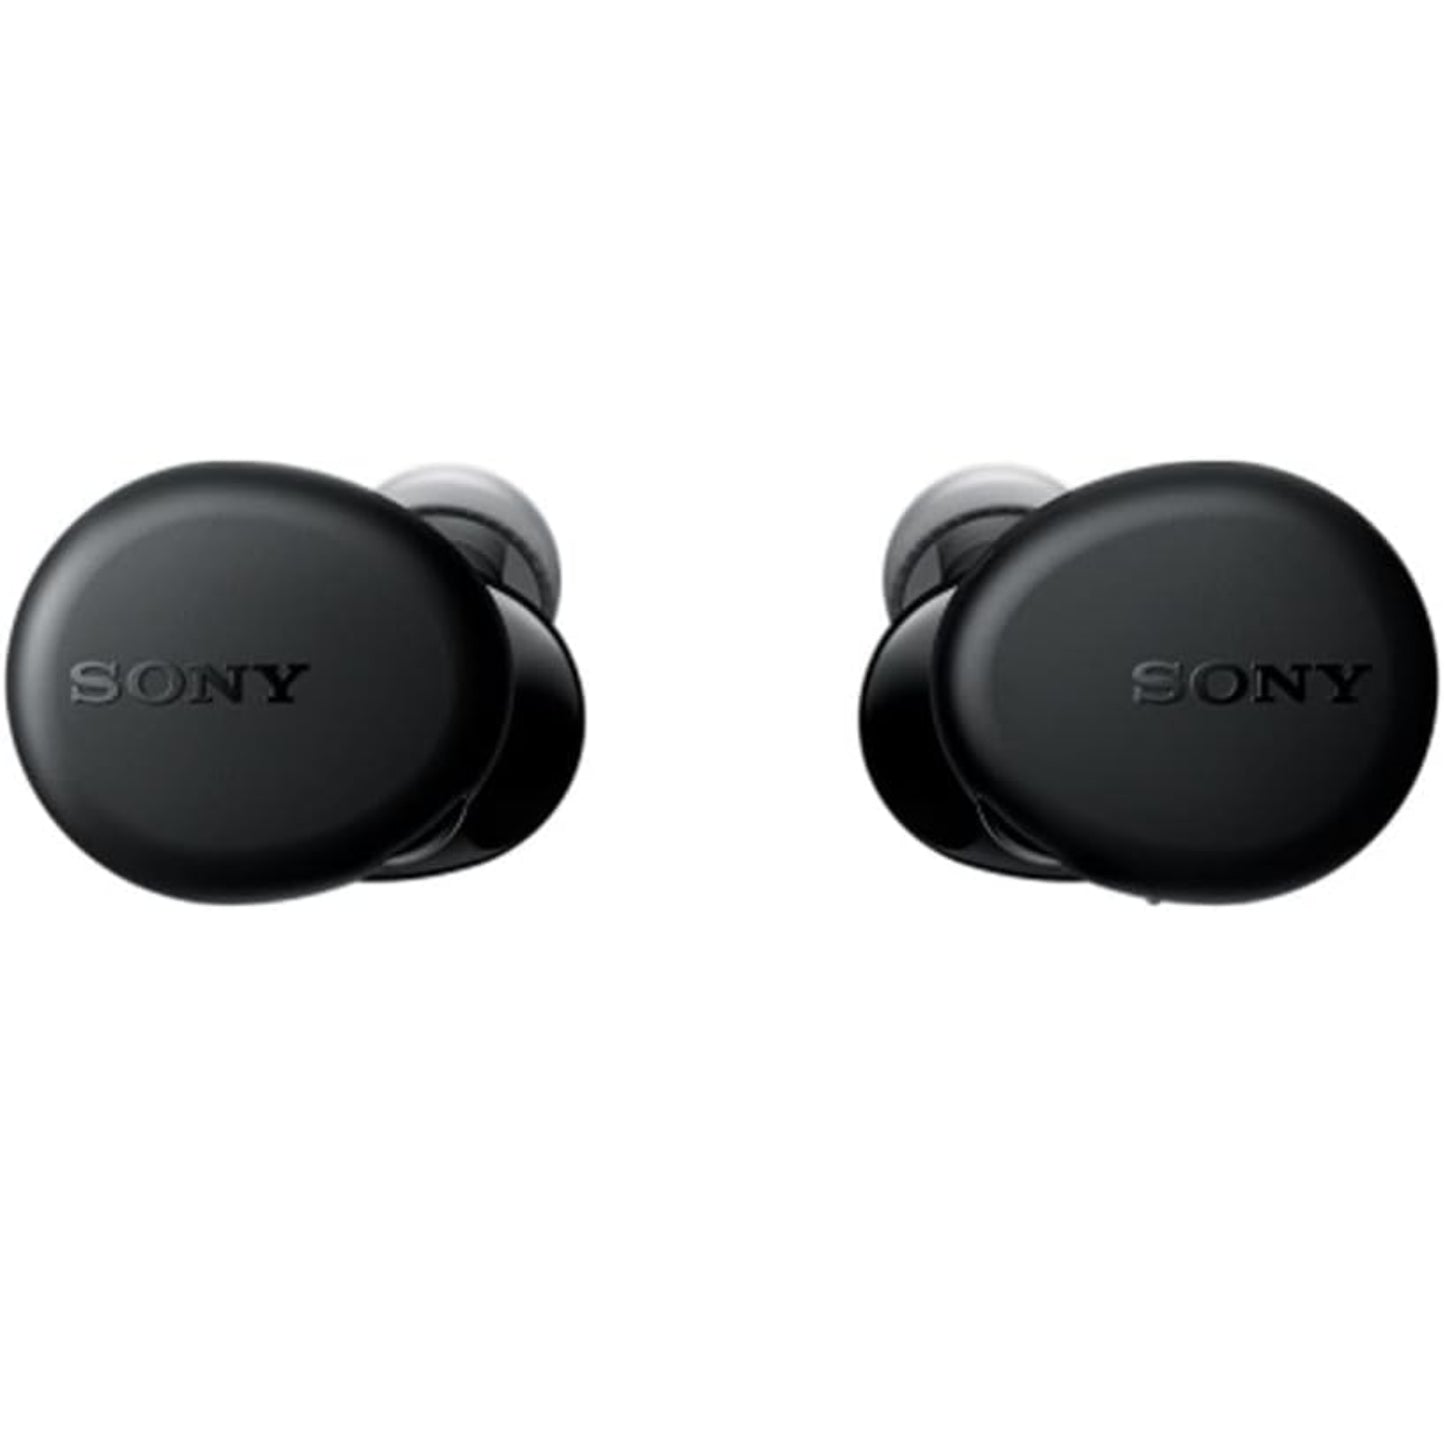 Sony Wf-xb700 Wireless Stereo Headset Black - MyMobile